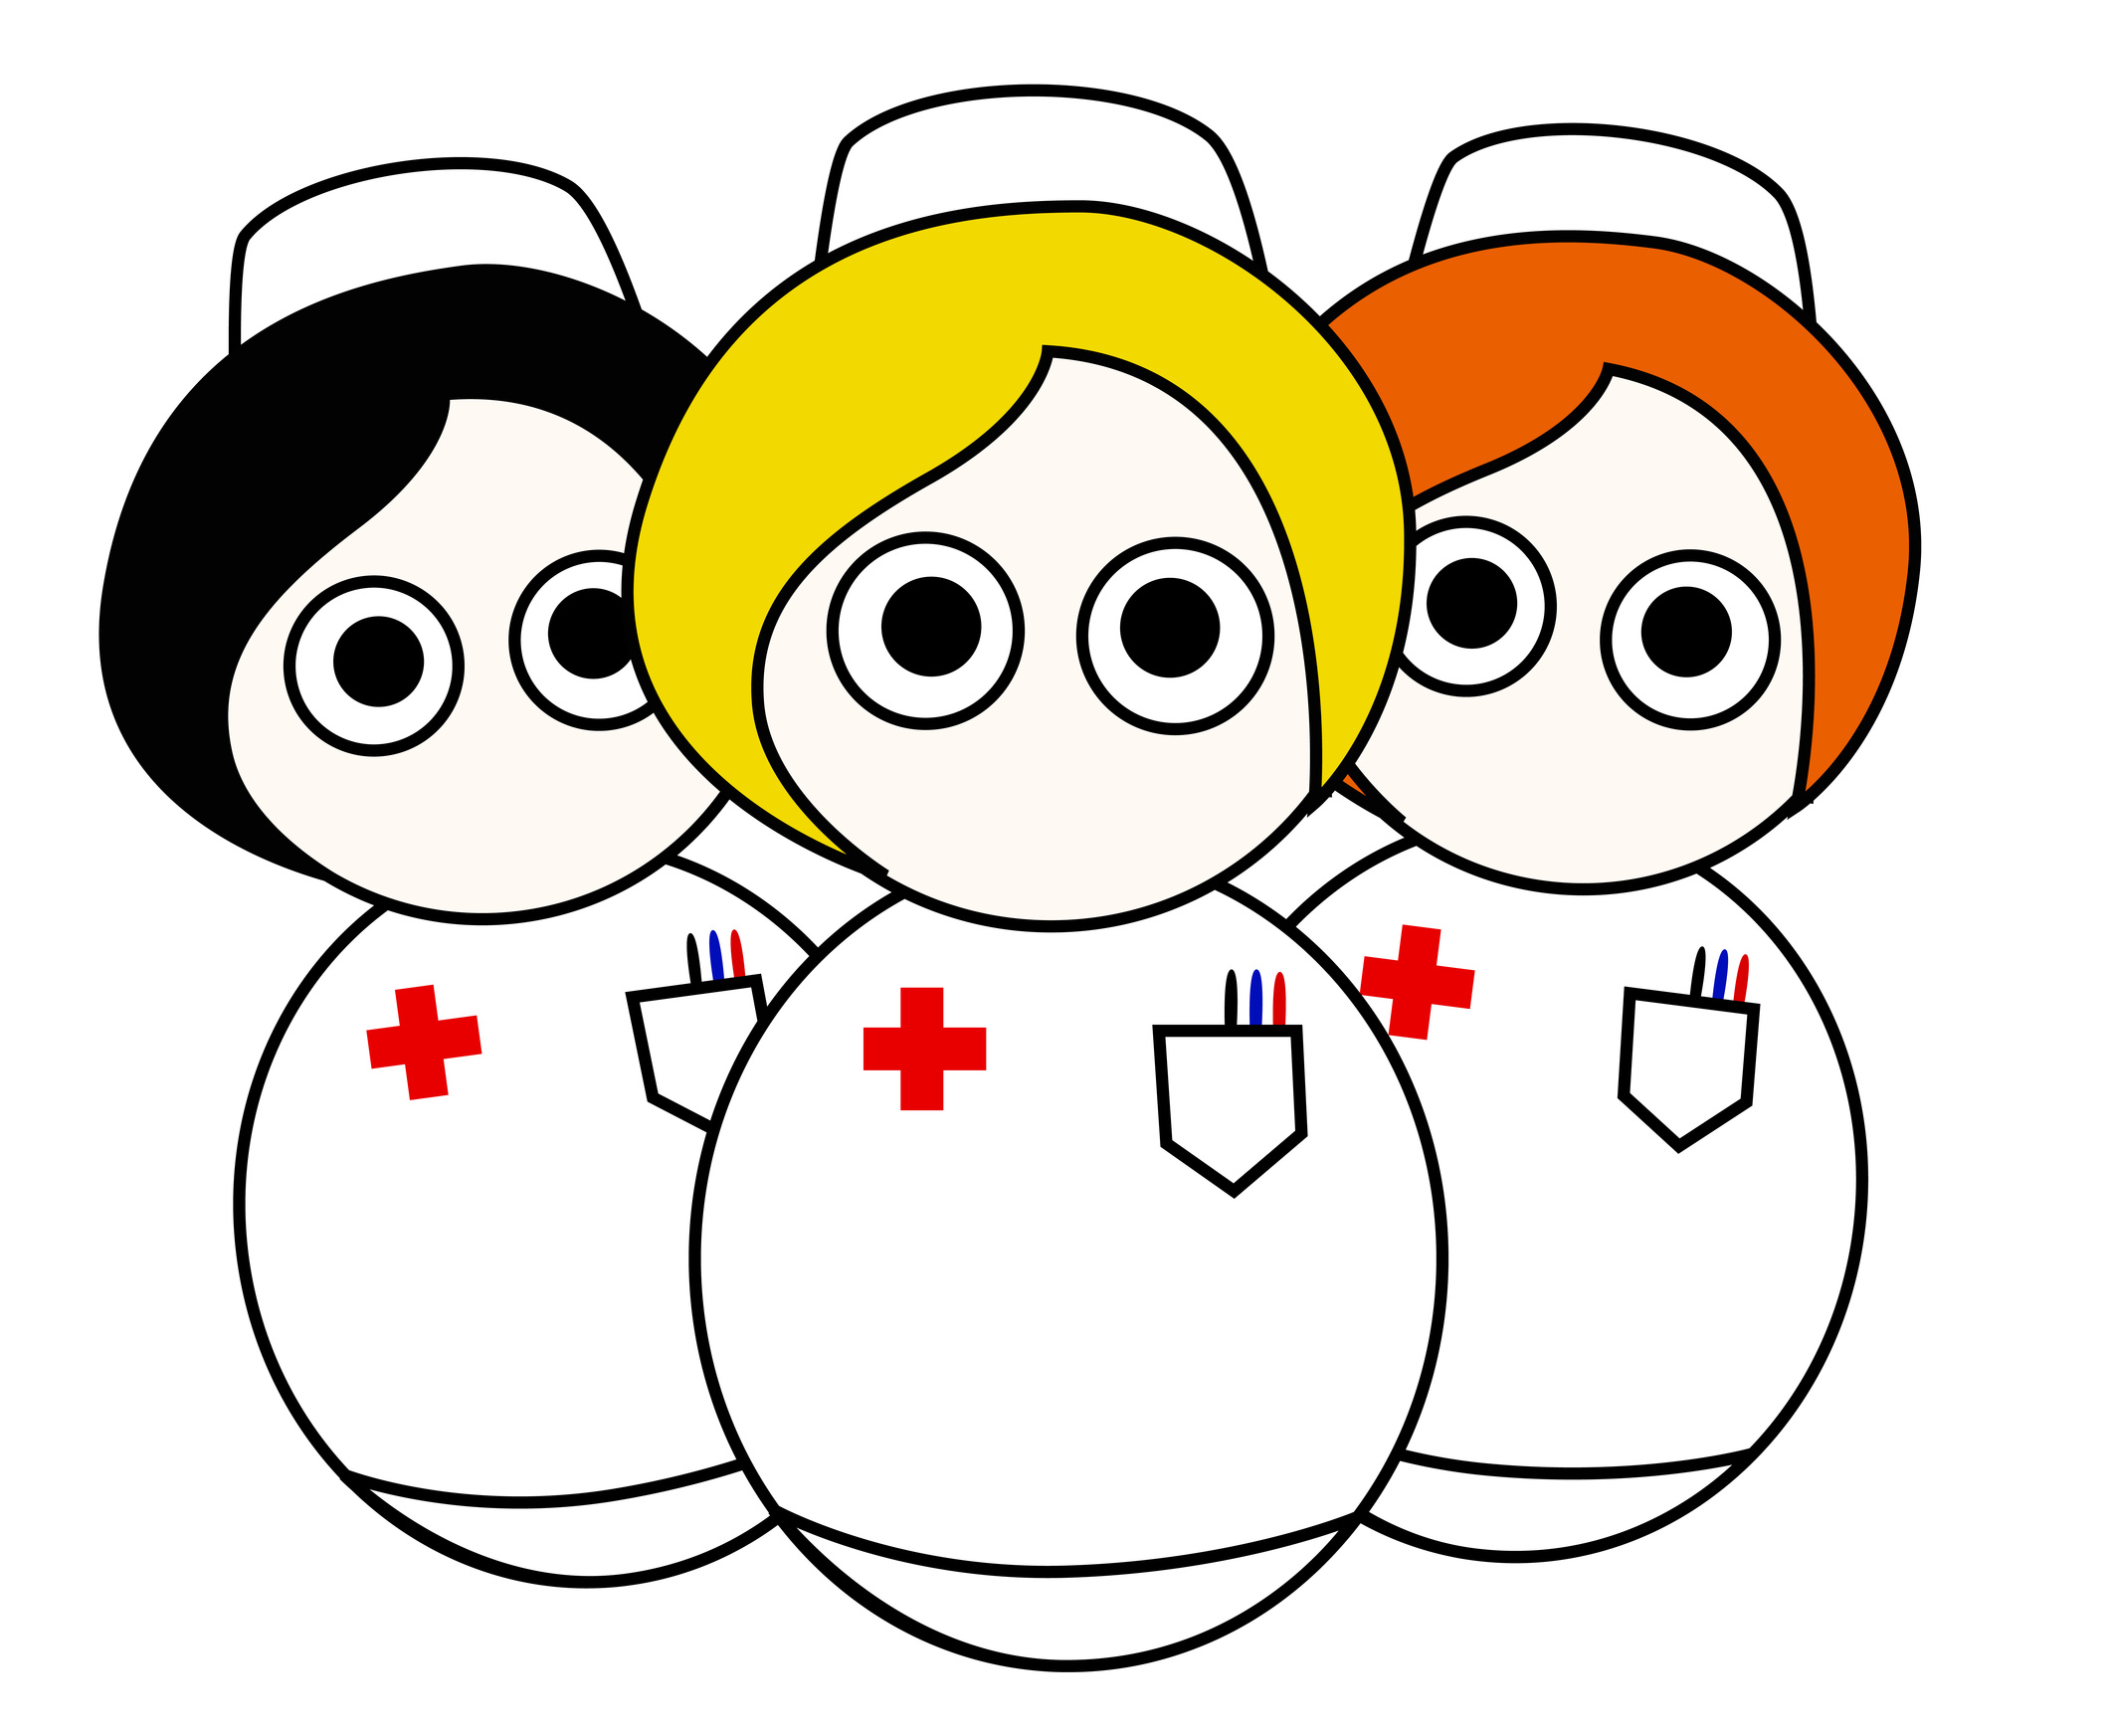 Free Cartoon Nurse Cliparts, Download Free Cartoon Nurse Cliparts png